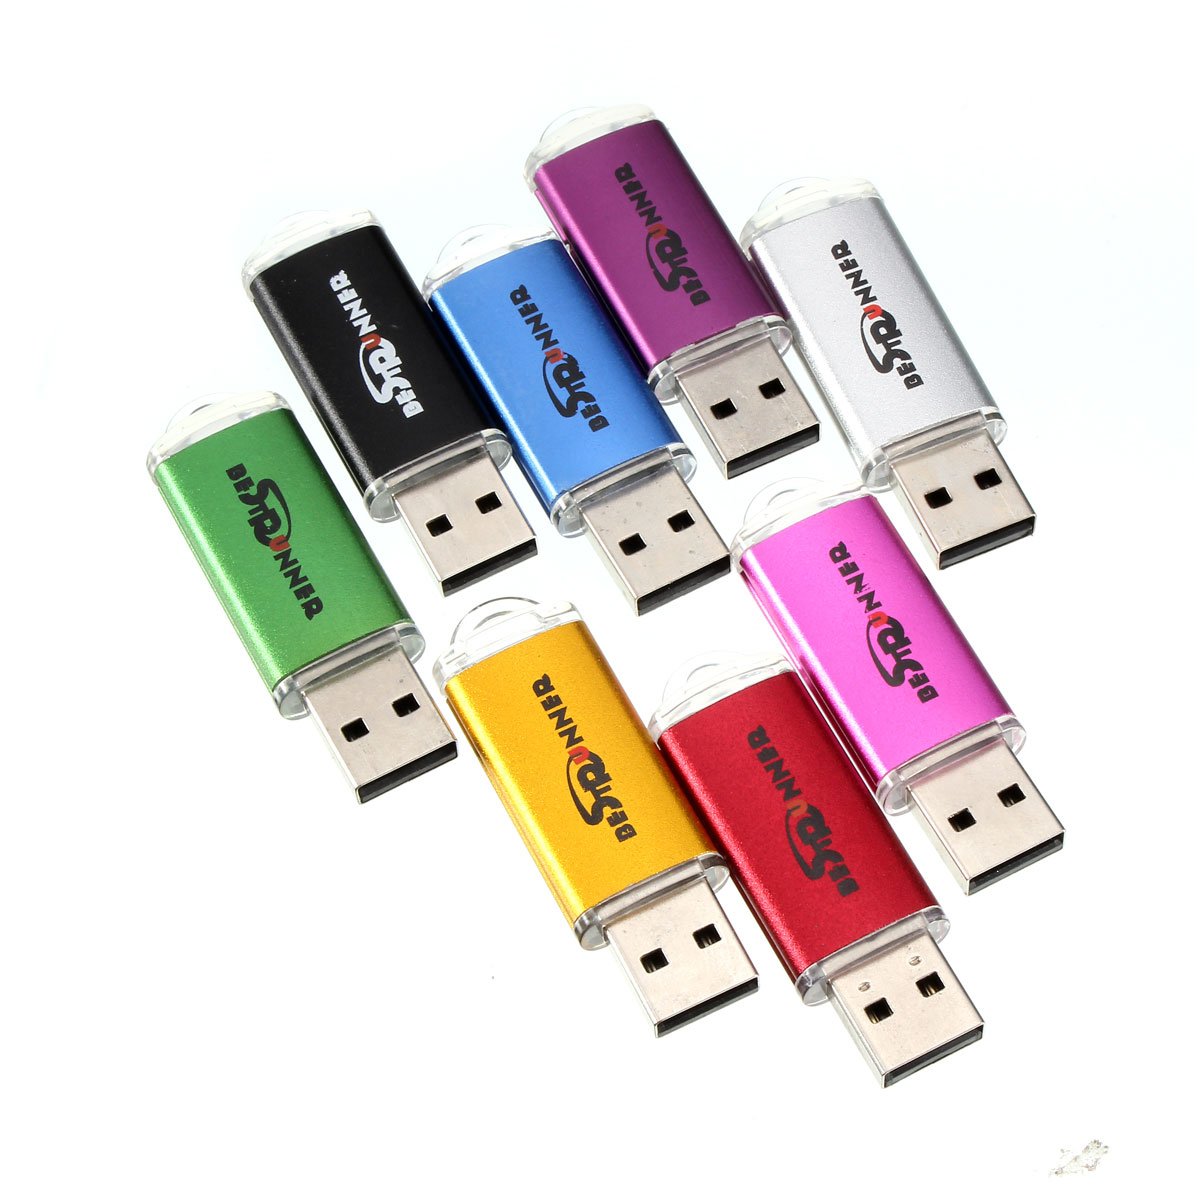 Bestrunner 32GB USB 2.0 Flash Drive Candy Color Memory U Disk 1